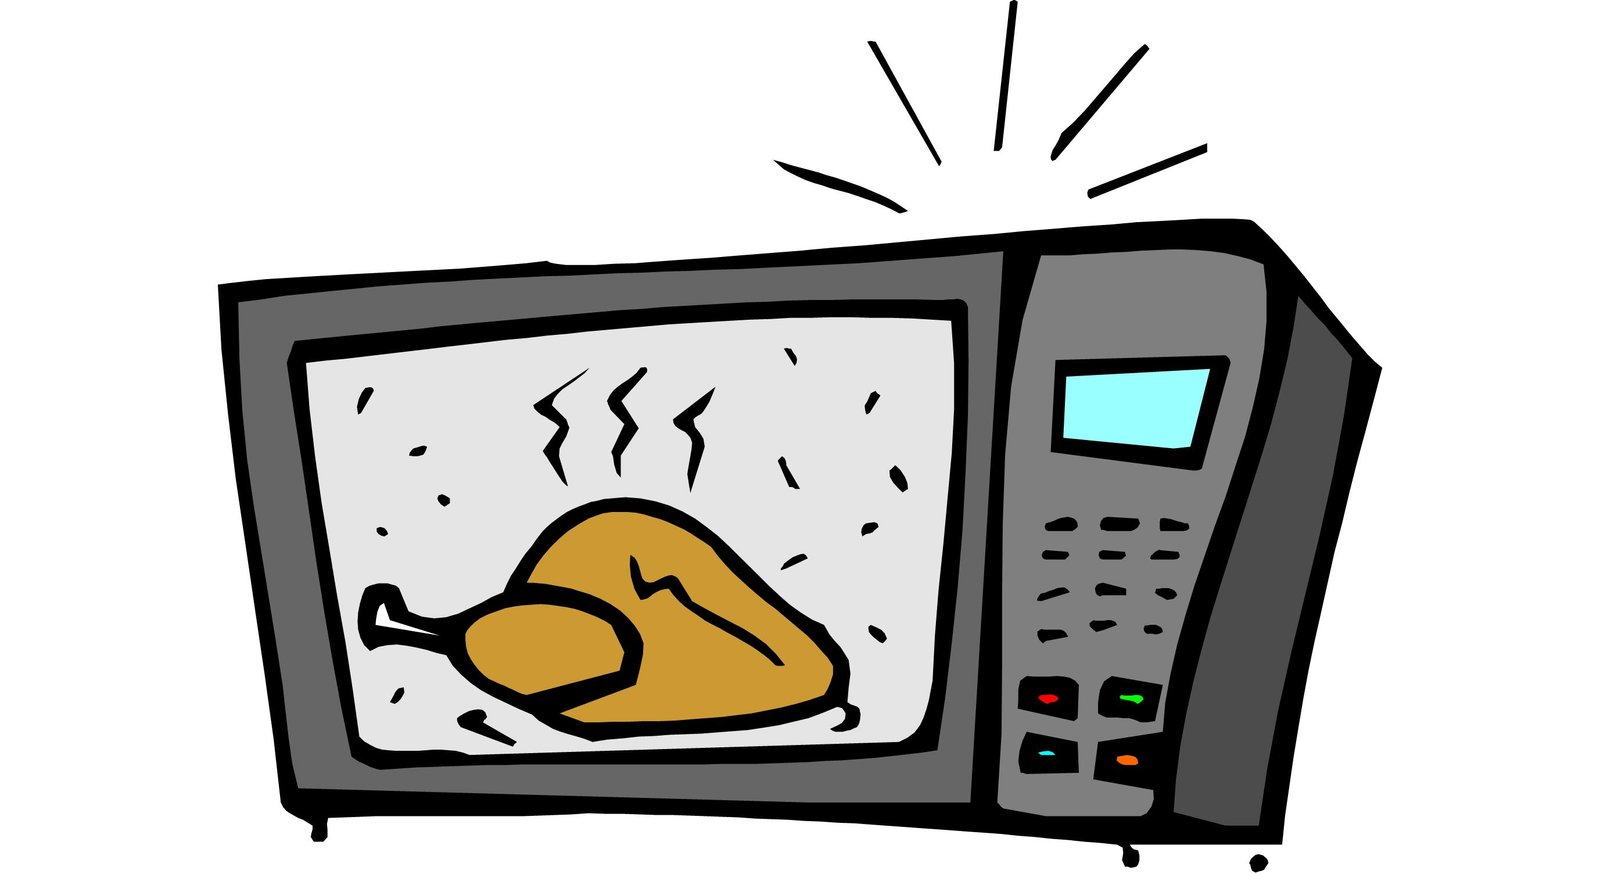 A cartoon of a microwave